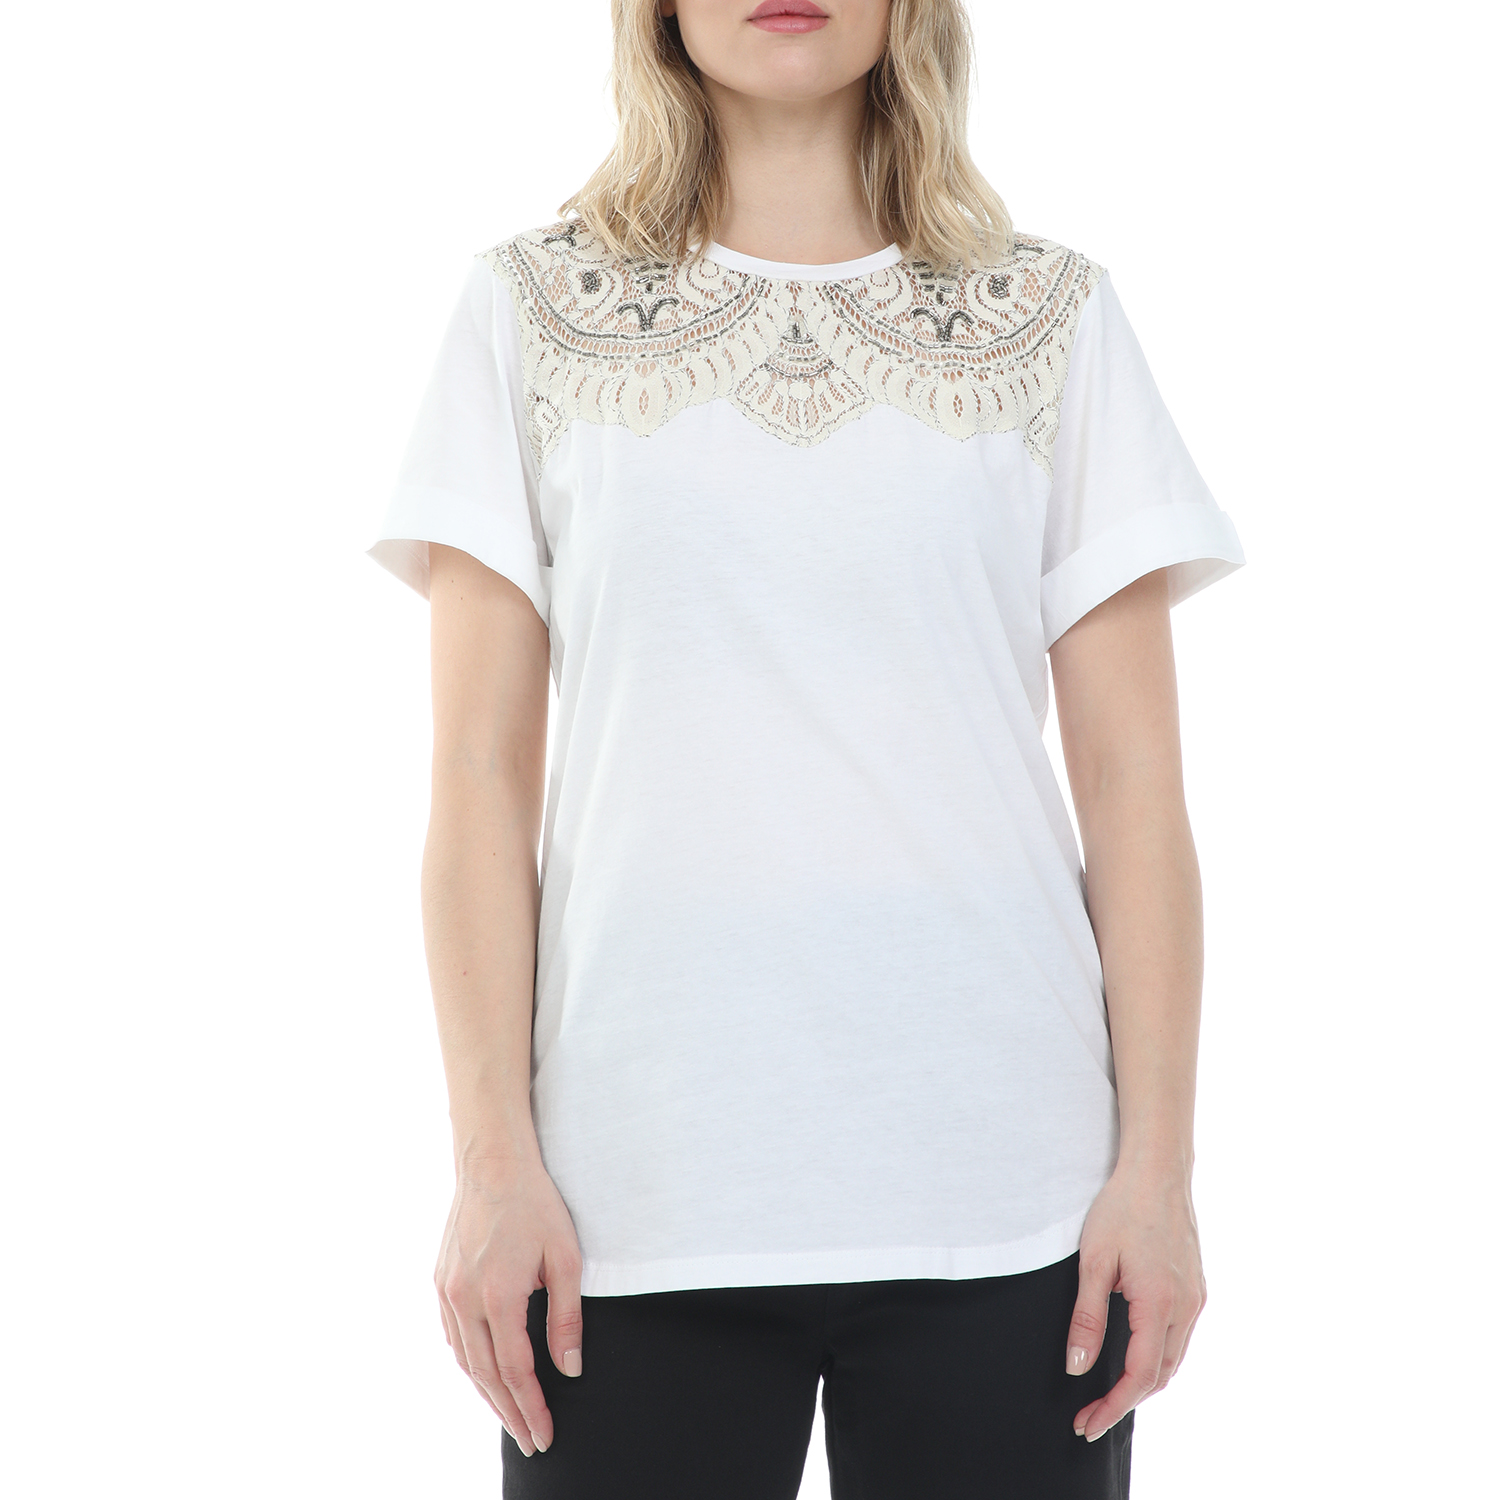 Γυναικεία/Ρούχα/Μπλούζες/Κοντομάνικες TWIN-SET - Γυναικεία μπλούζα TWIN-SET λευκή